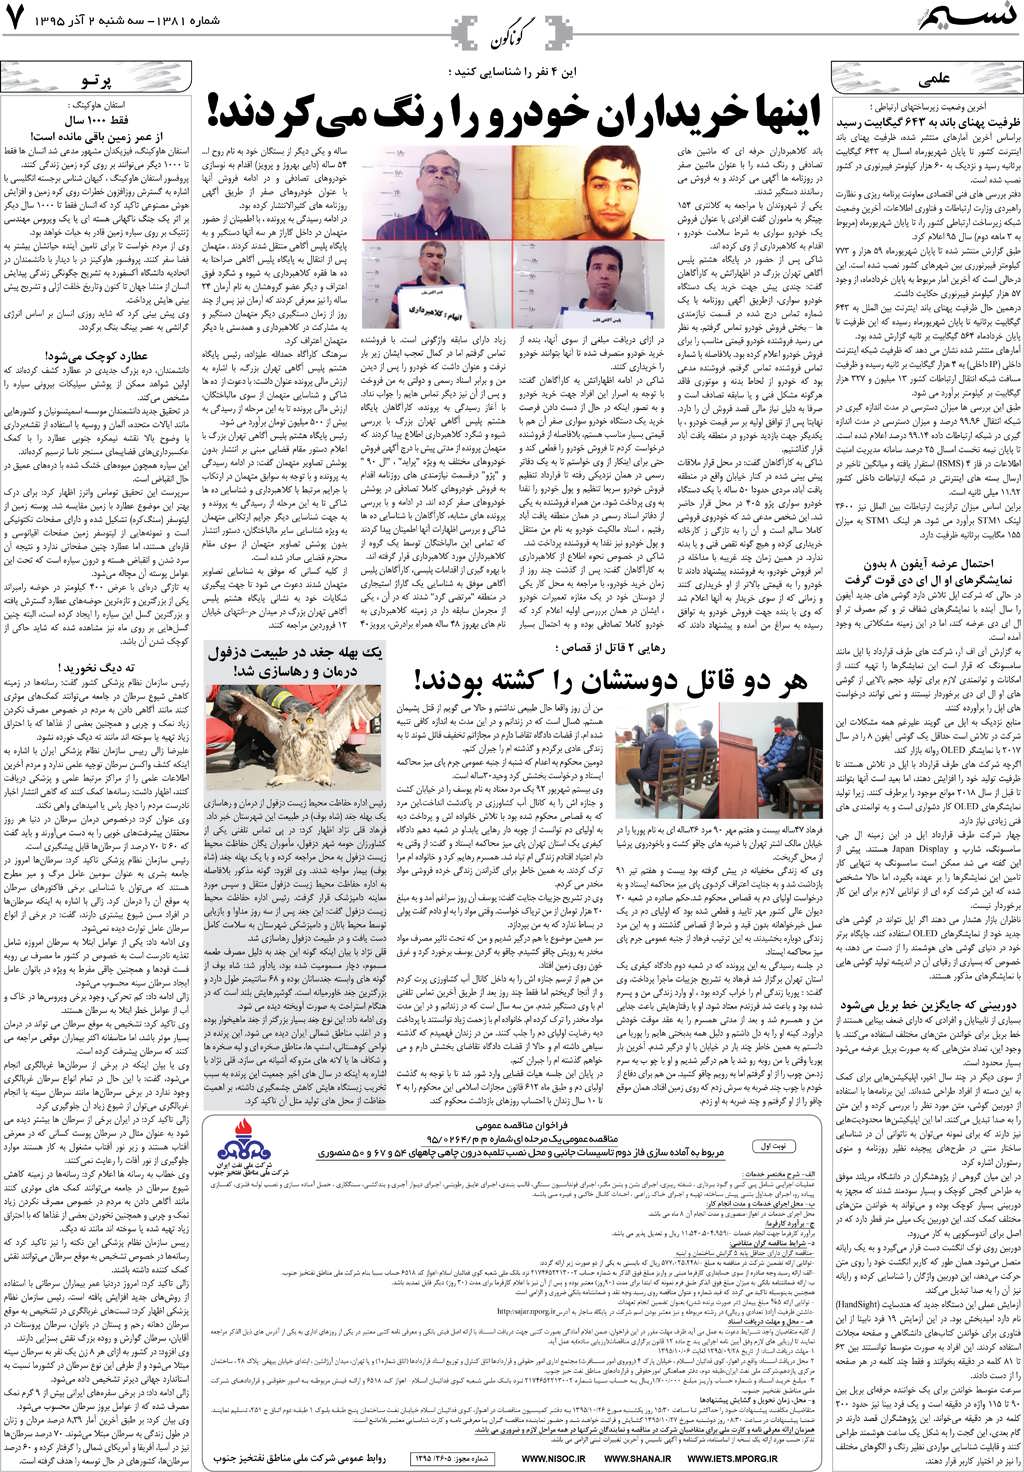 صفحه گوناگون روزنامه نسیم شماره 1381